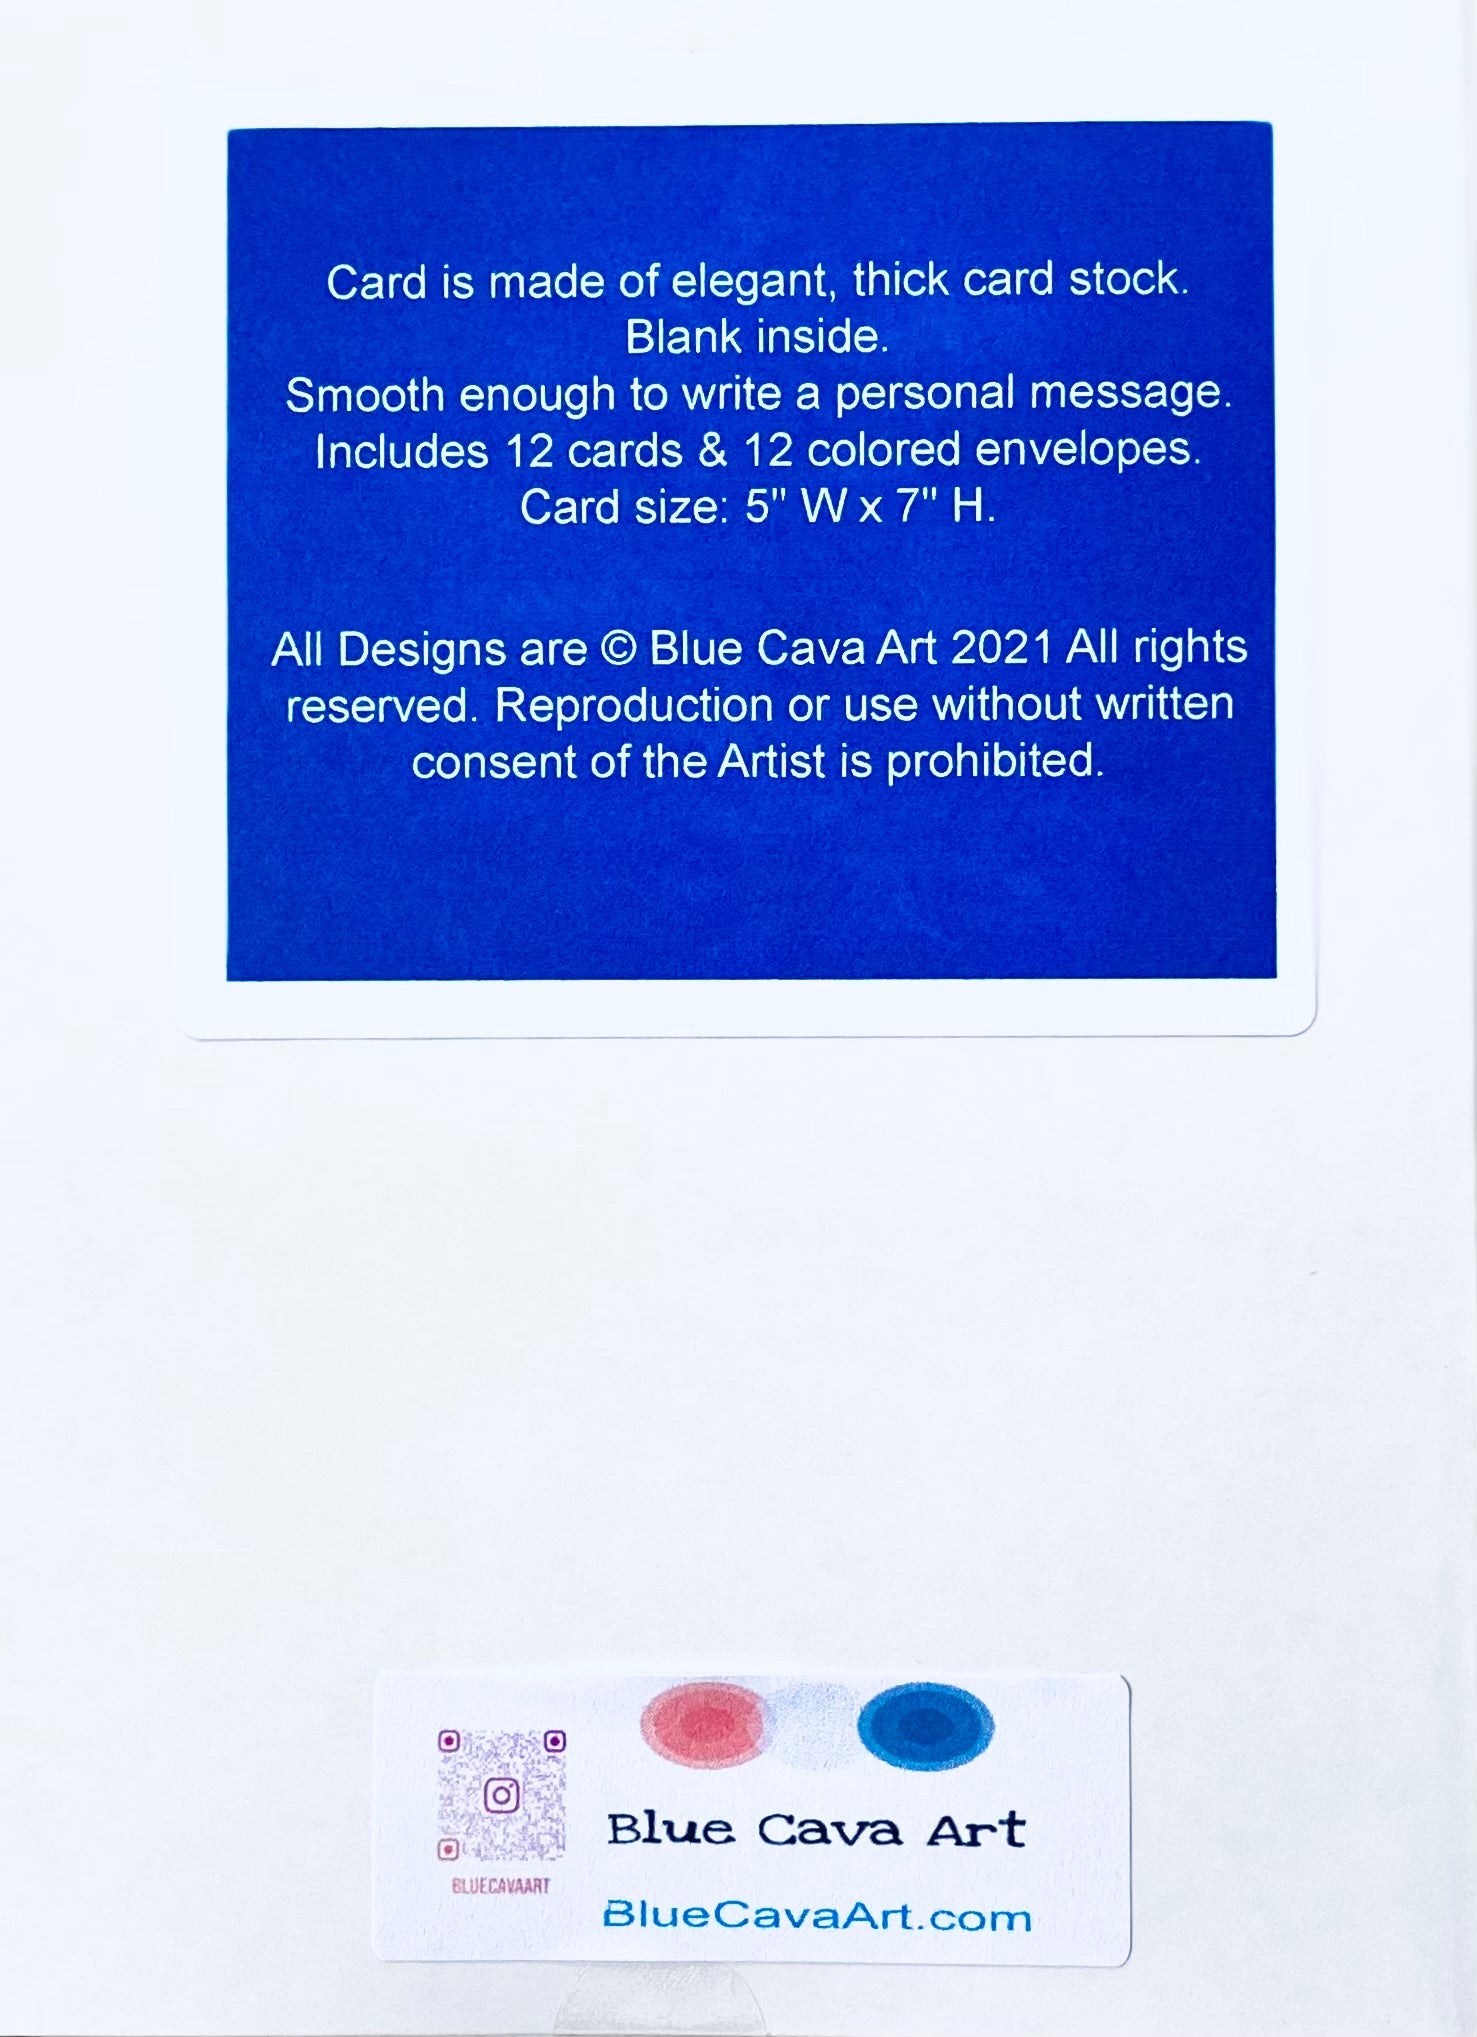 OKI Sea Turtle Greeting Card - Blue Cava